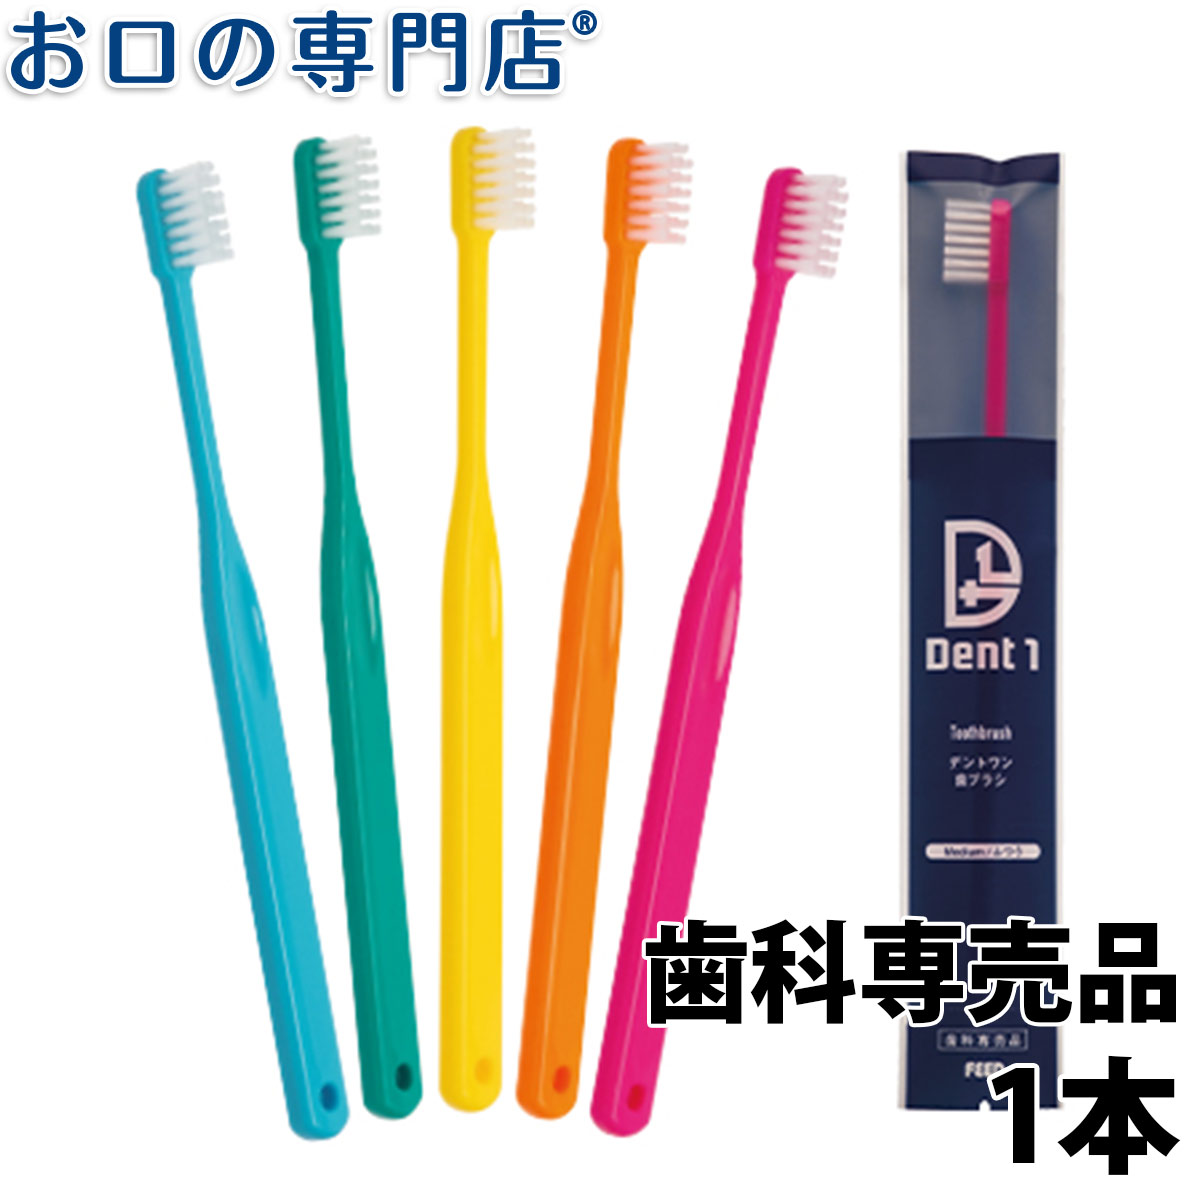 【18日最大P8倍要エントリー】歯科専売品 Dent1(デントワン) 歯ブラシ 1本